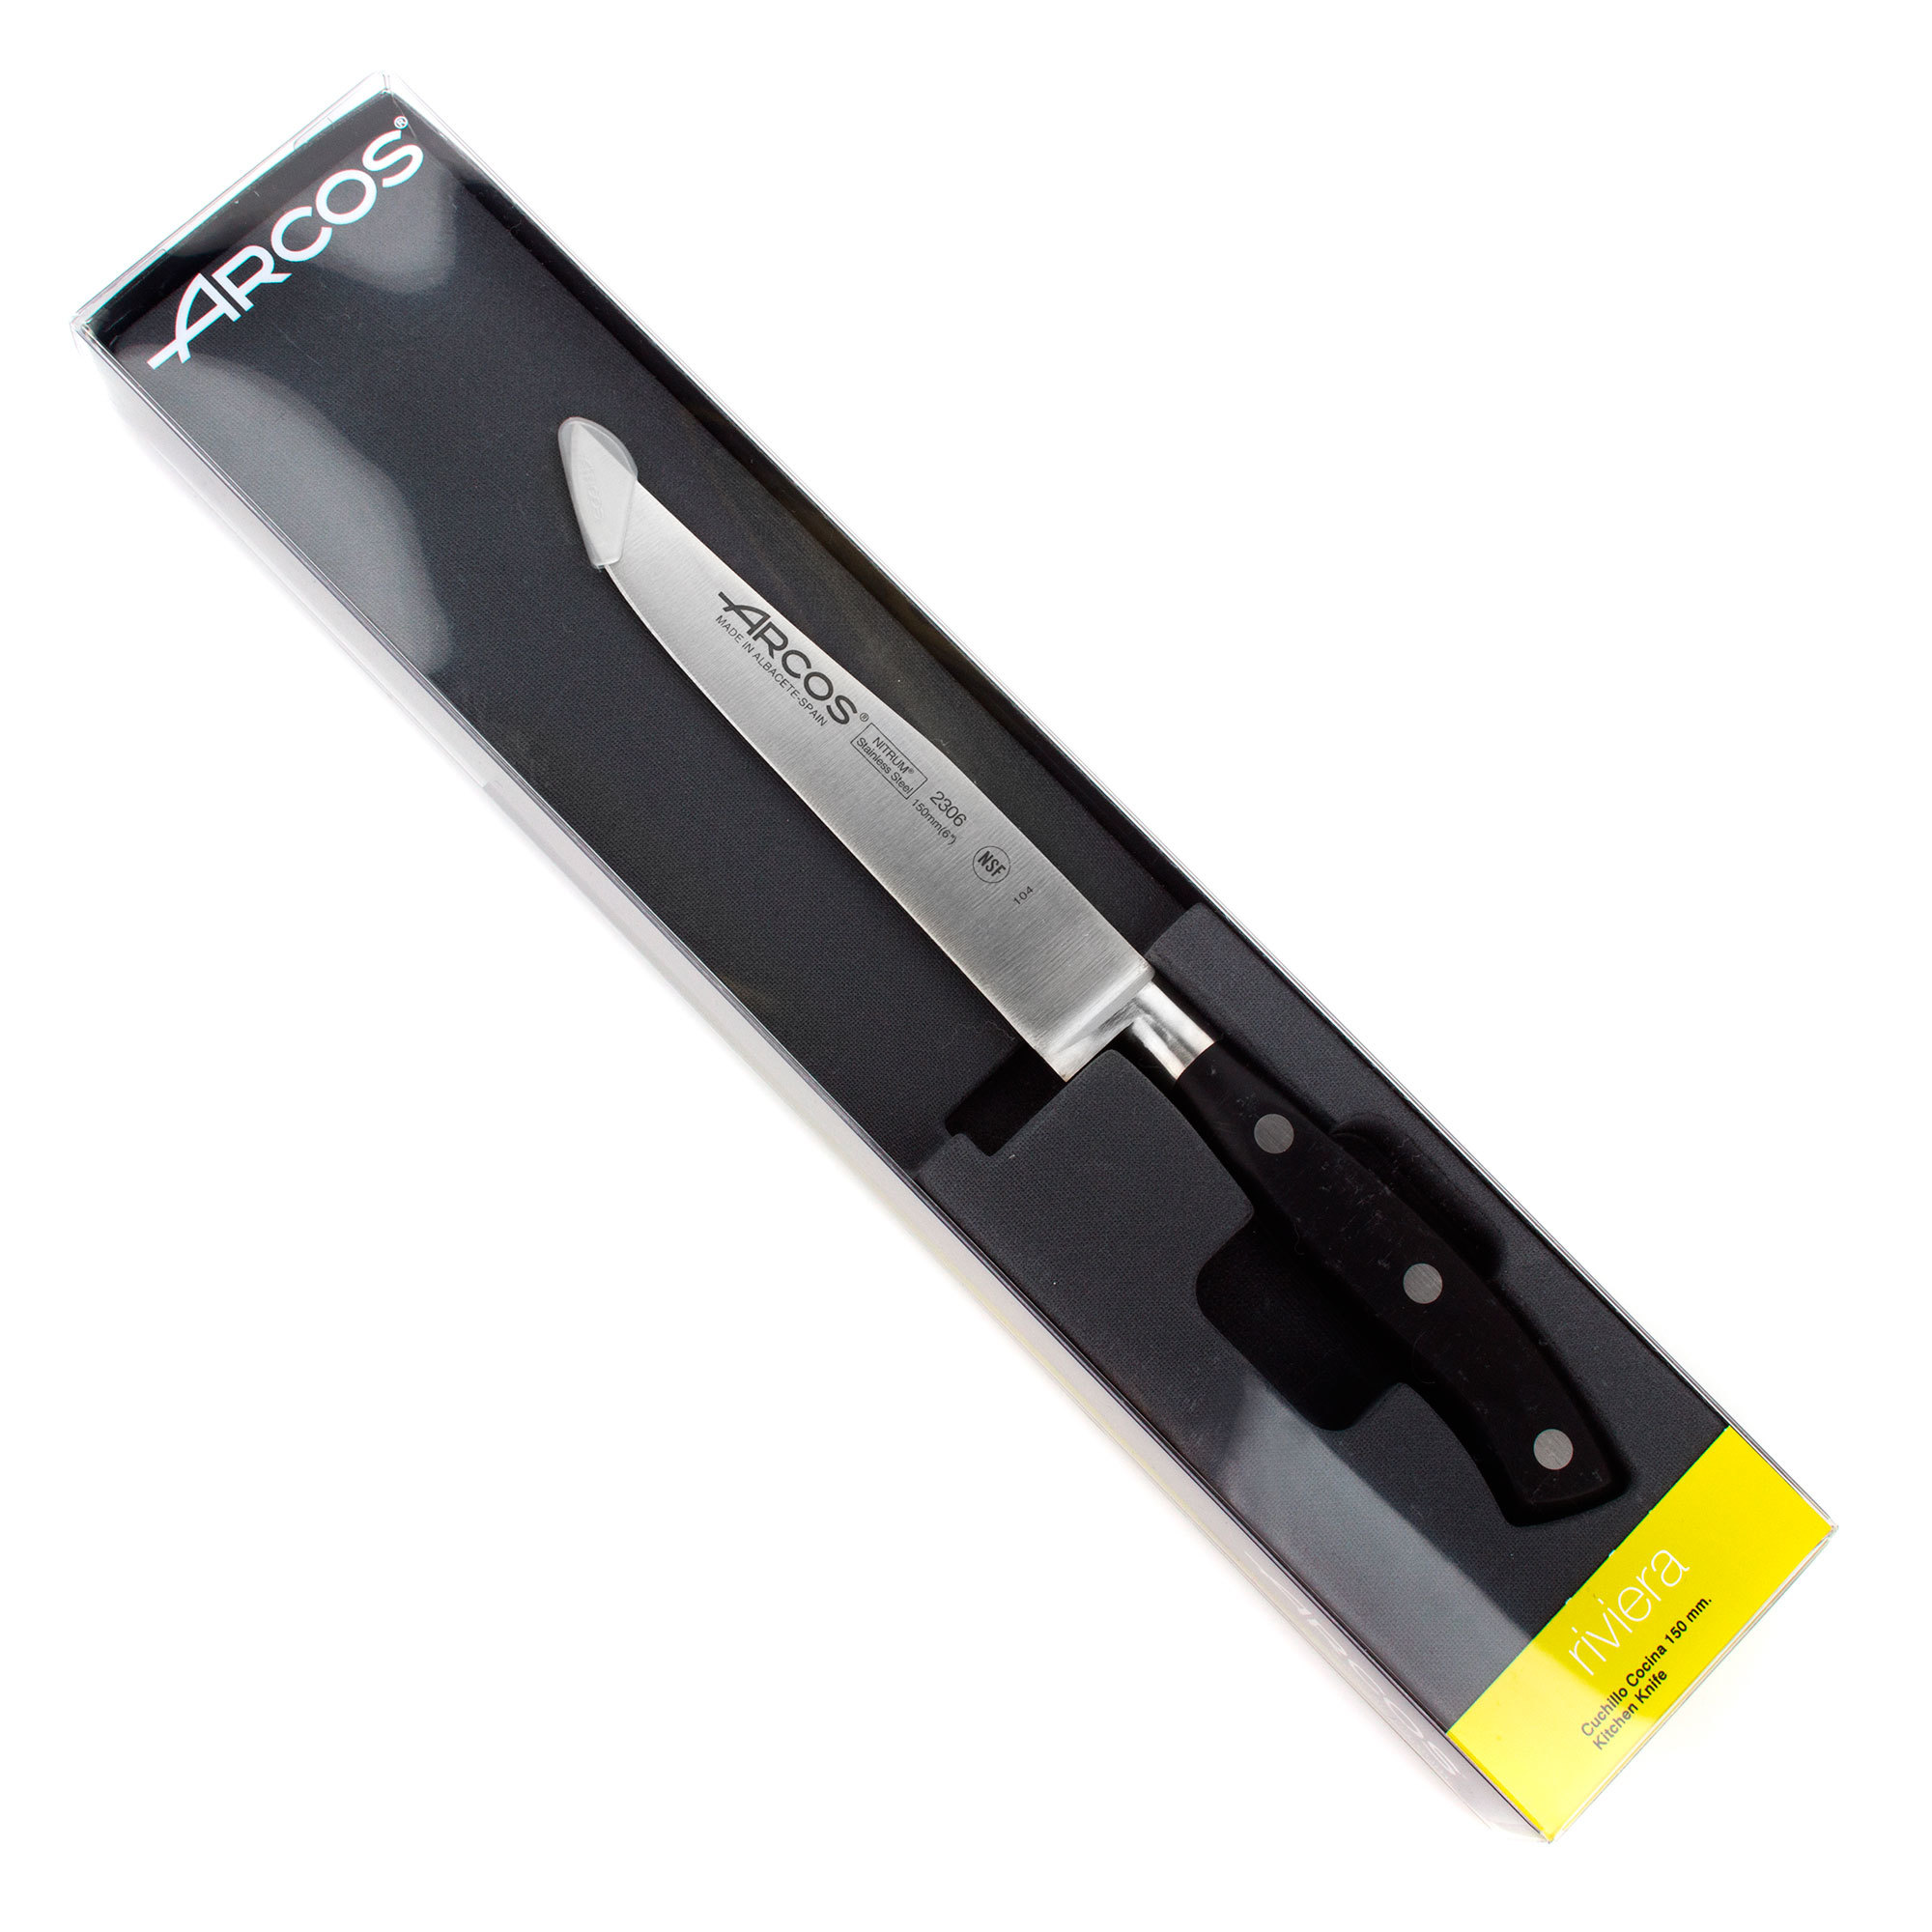 Нож кухонный стальной универсальный 15 см ARCOS Riviera арт. 2306